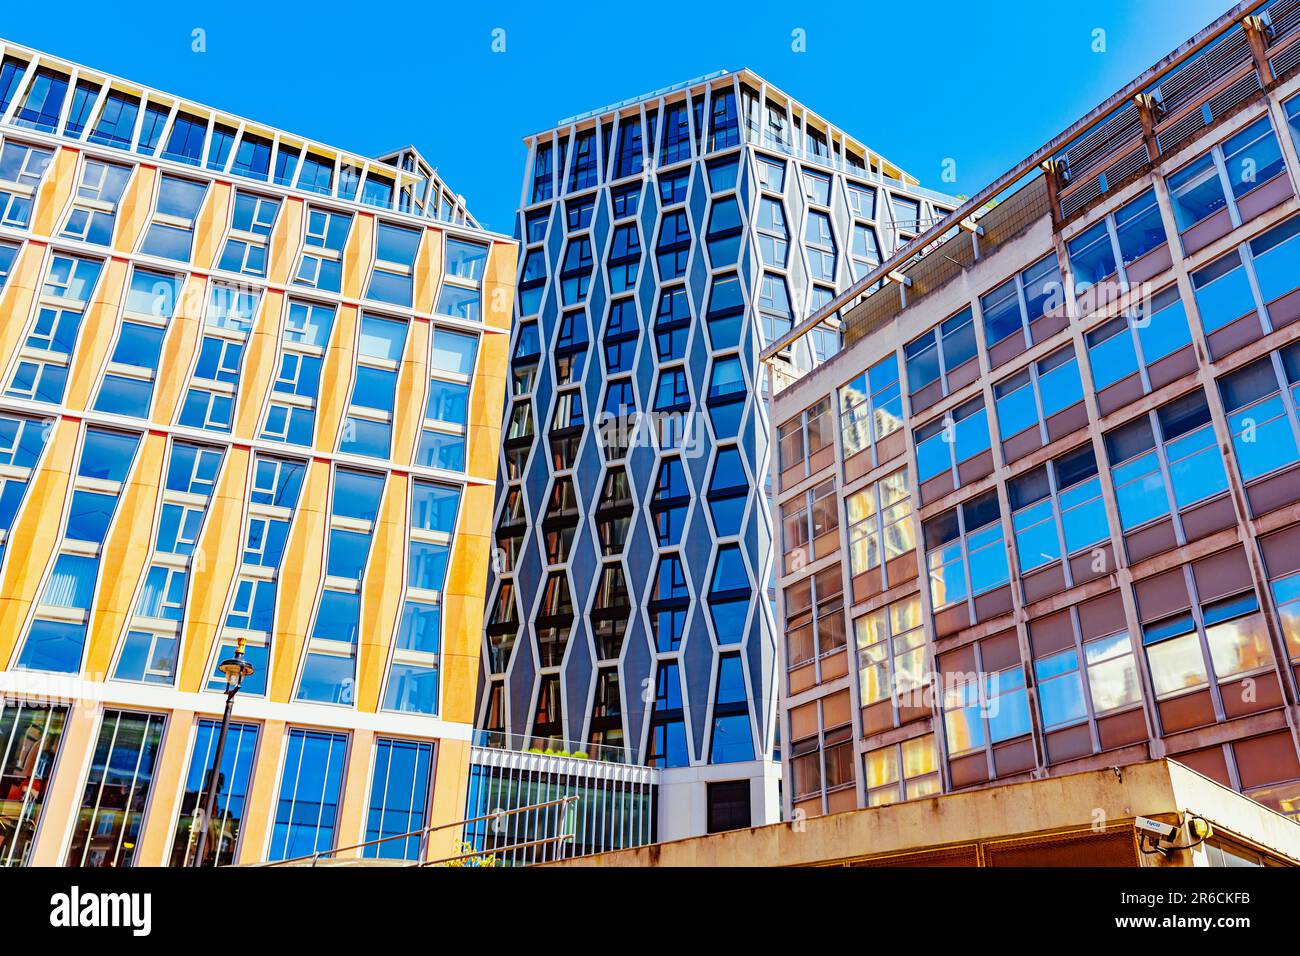 Victoria, Londra - strati architettonici Foto Stock